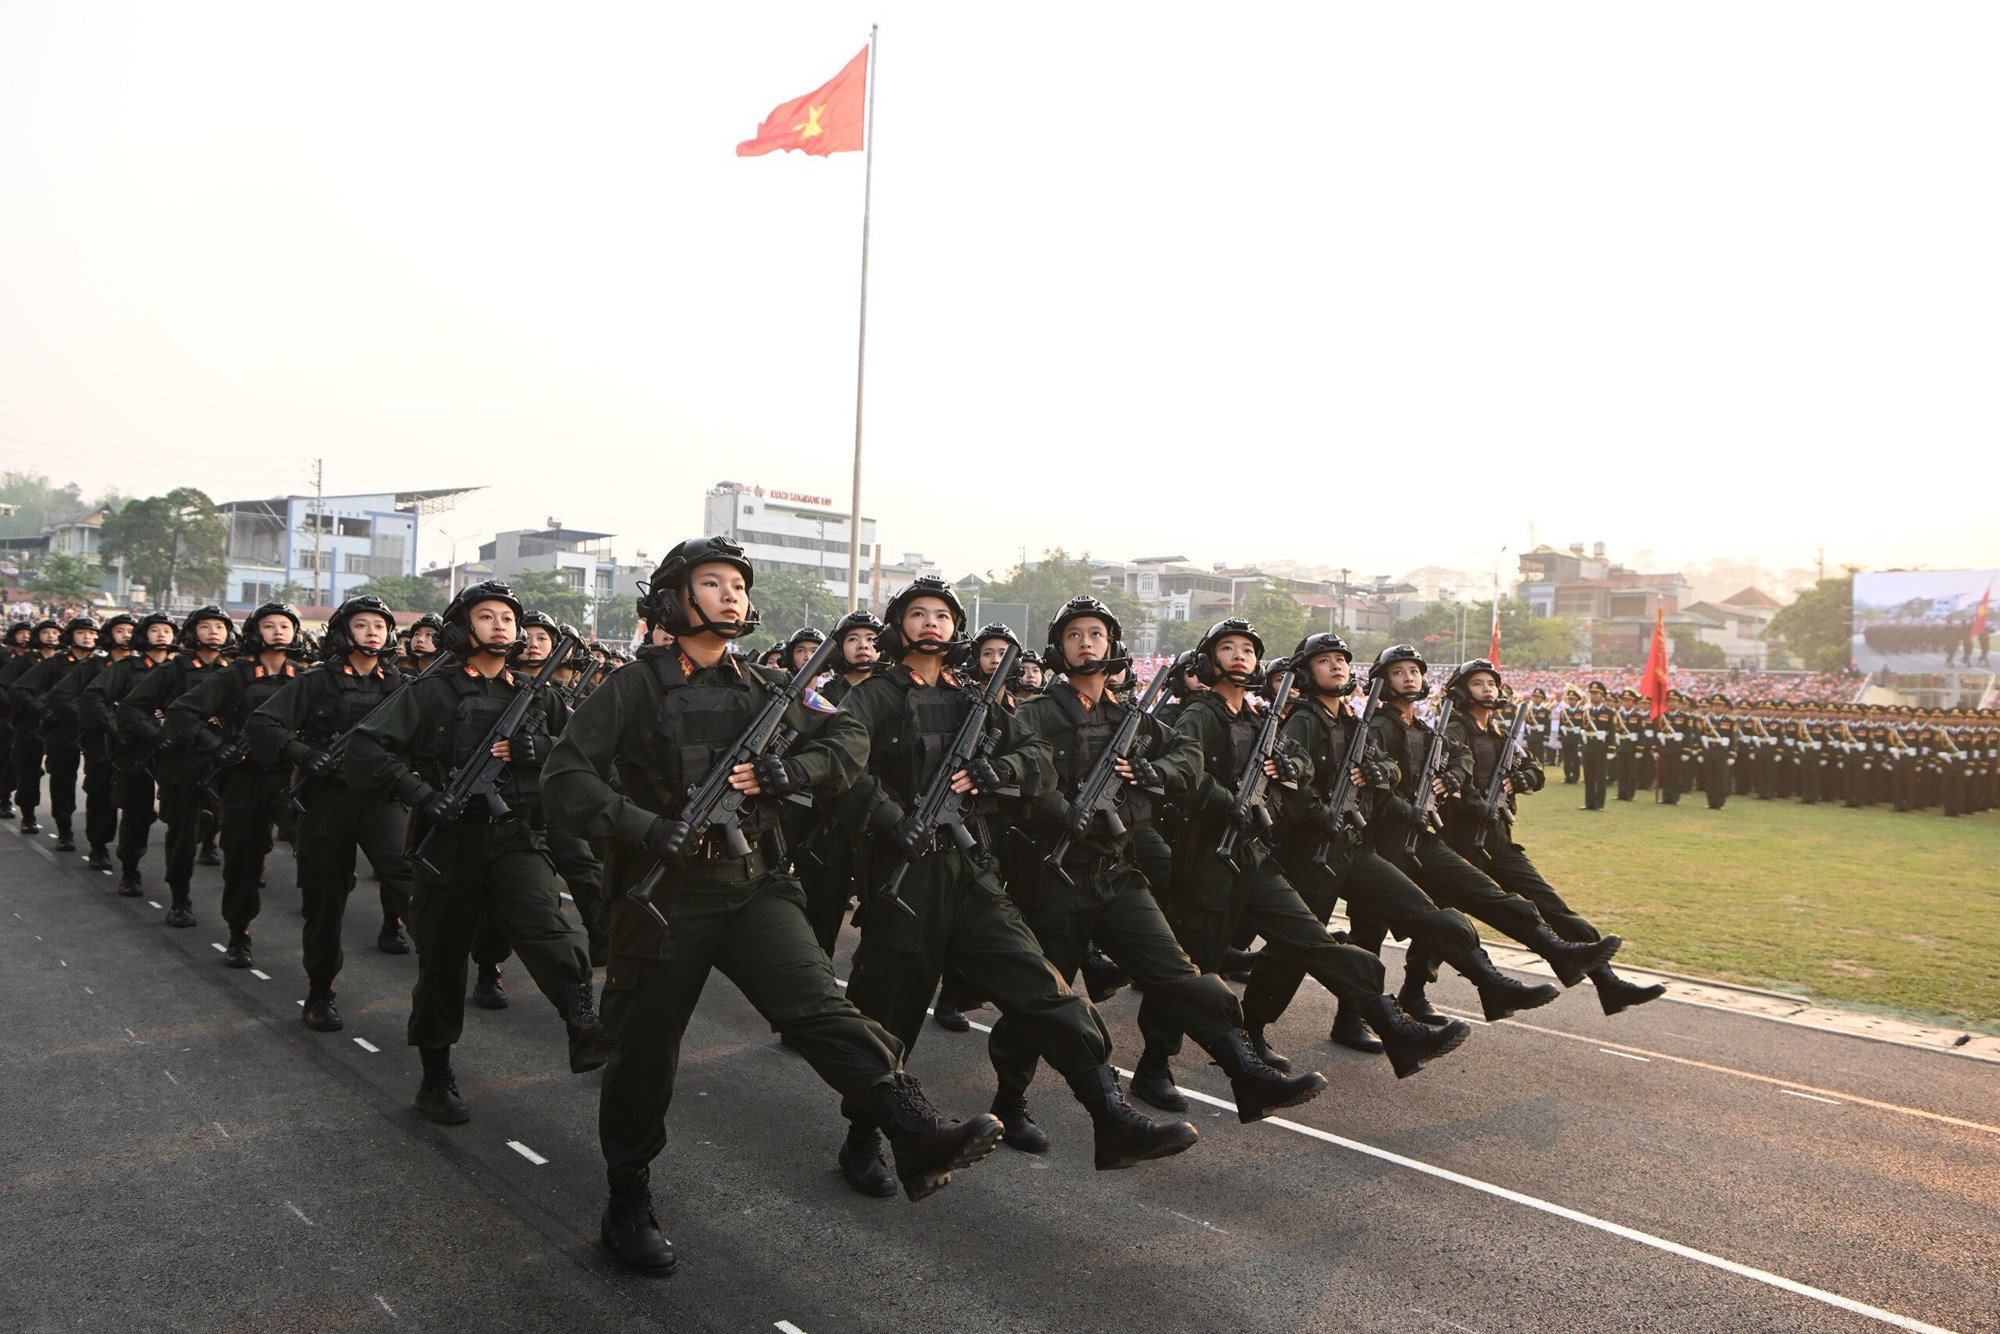 Hợp luyện các lực lượng diễu binh, diễu hành kỷ niệm 70 năm Chiến thắng Điện Biên Phủ - ảnh 5